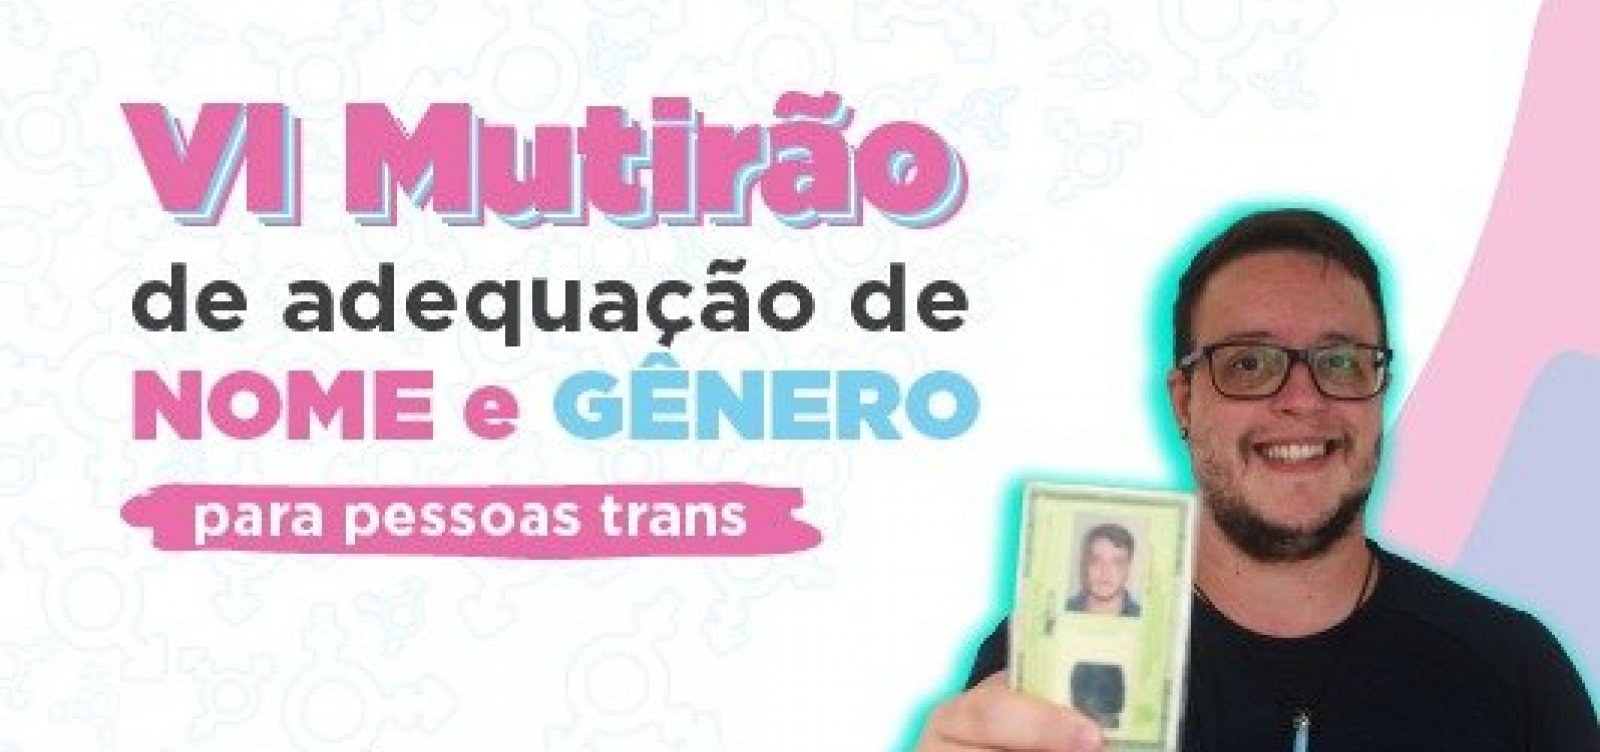 Defensoria da Bahia promove mutirão de adequação de nome e gênero para pessoas trans